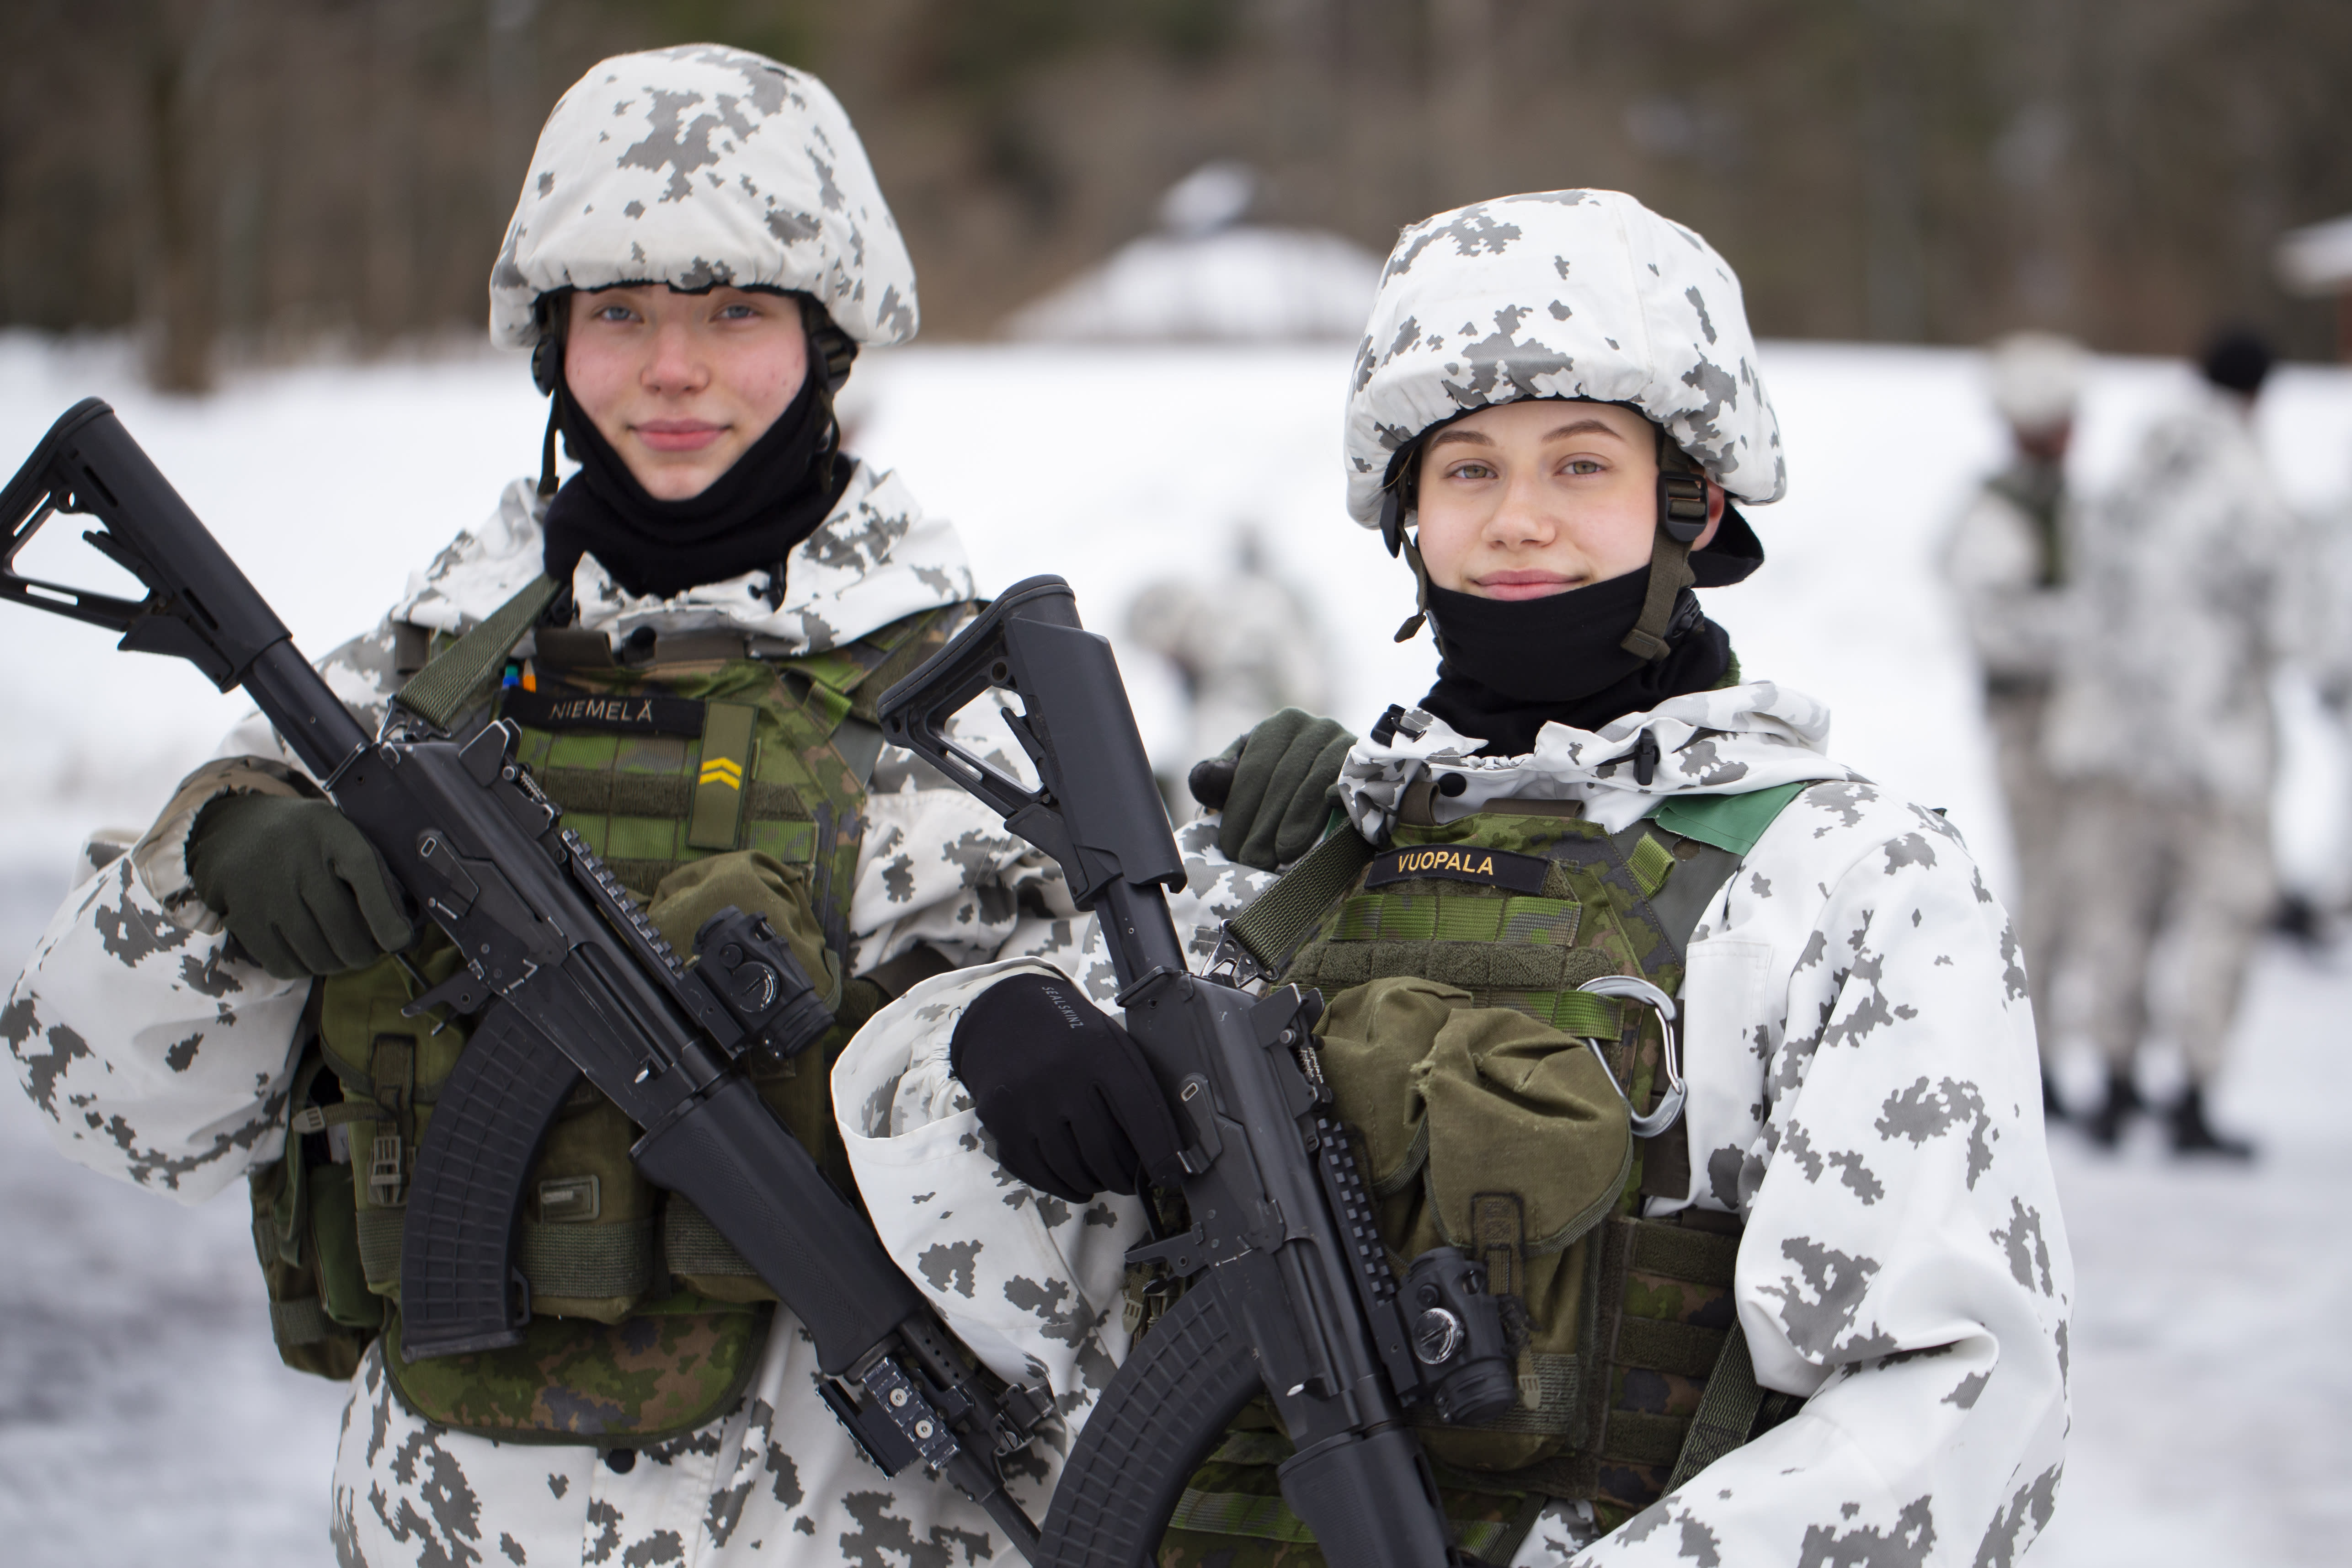 Casi 1,600 mujeres se ofrecen como voluntarias para el servicio militar finlandés